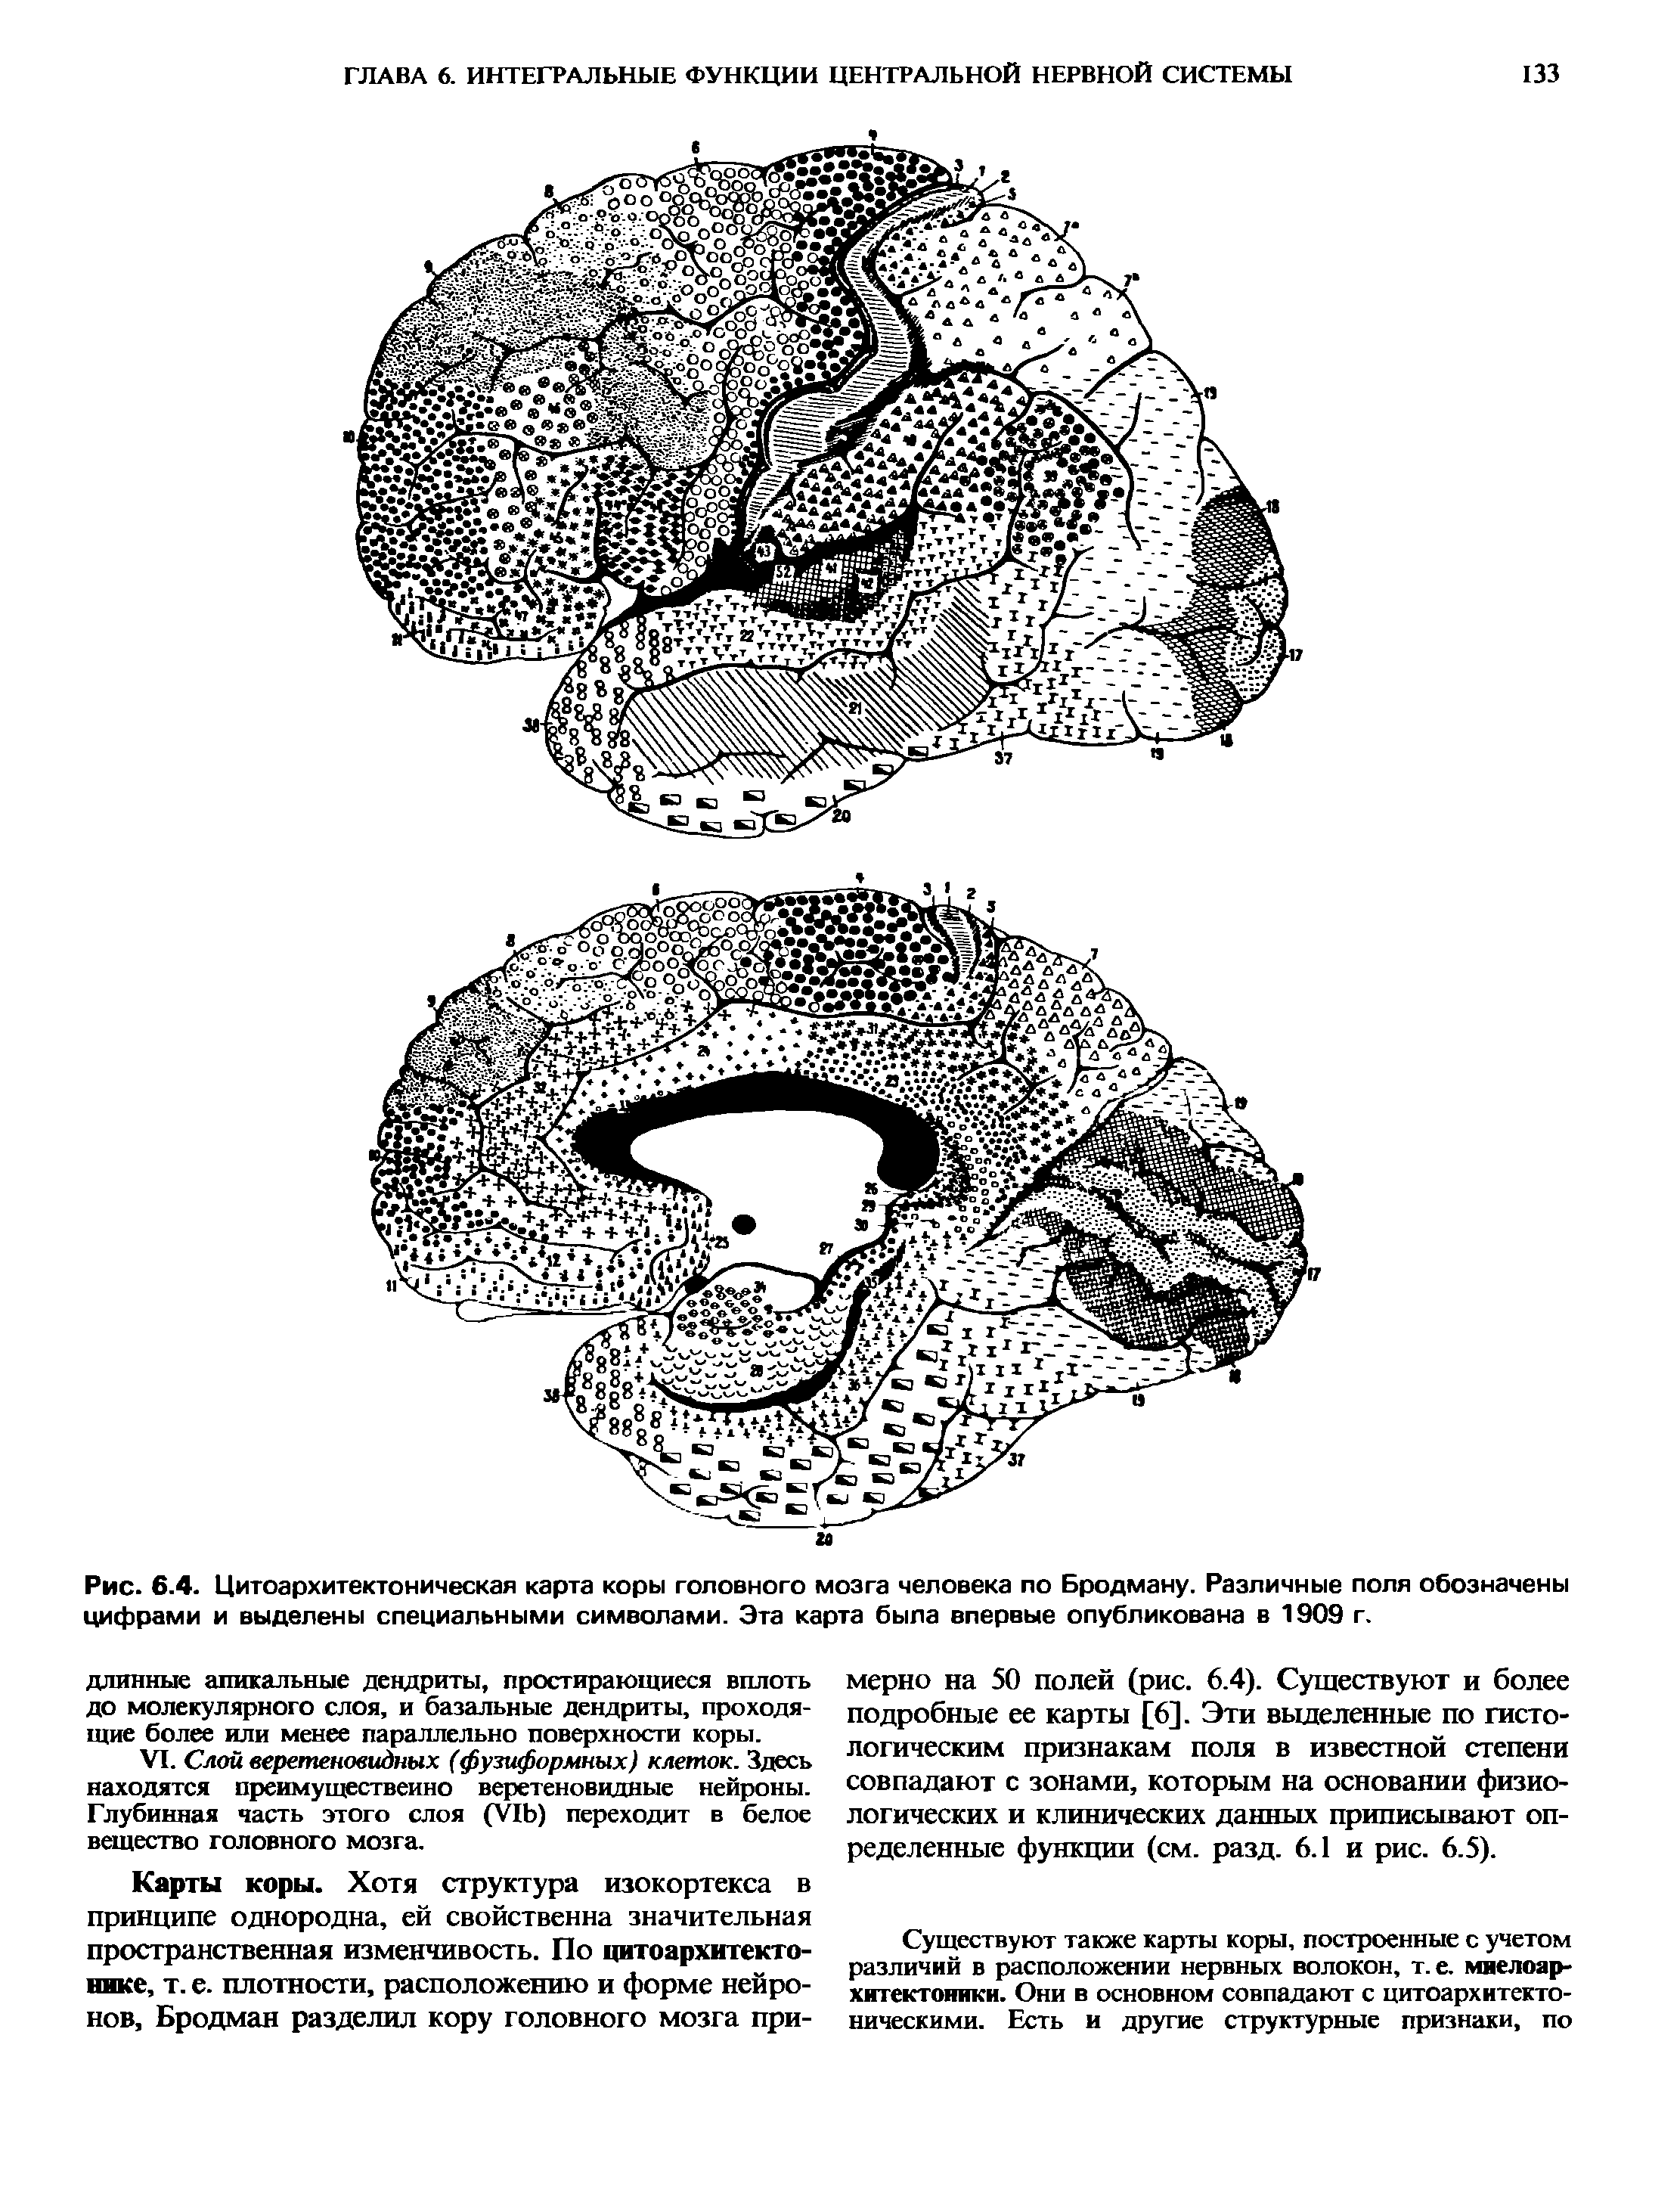 Рис. 6.4. Цитоархитектоническая карта коры головного мозга человека по Бродману. Различные поля обозначены цифрами и выделены специальными символами. Эта карта была впервые опубликована в 1909 г.